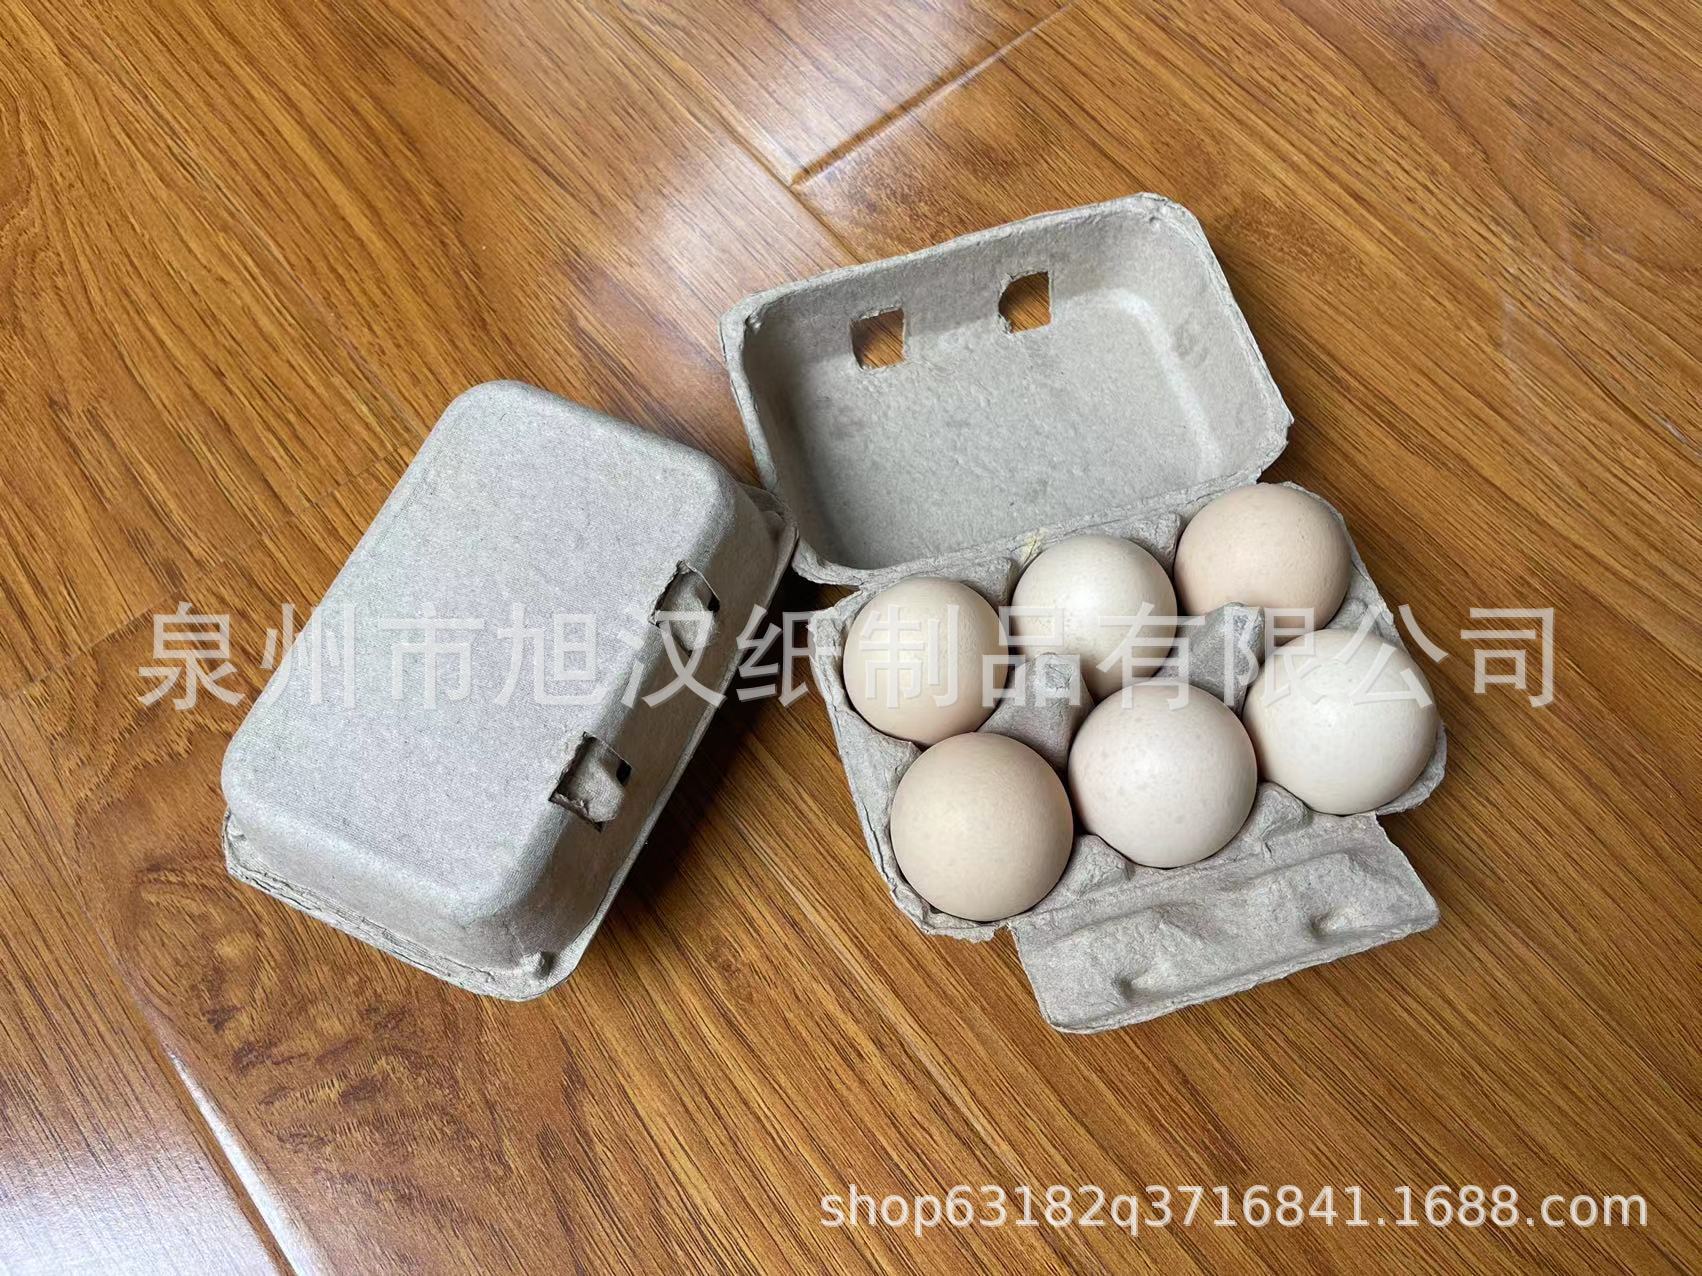 厂家直销 纸浆蛋盒鸡蛋盒 可降解鸡蛋盒一次性蛋盒鸡蛋托蛋托